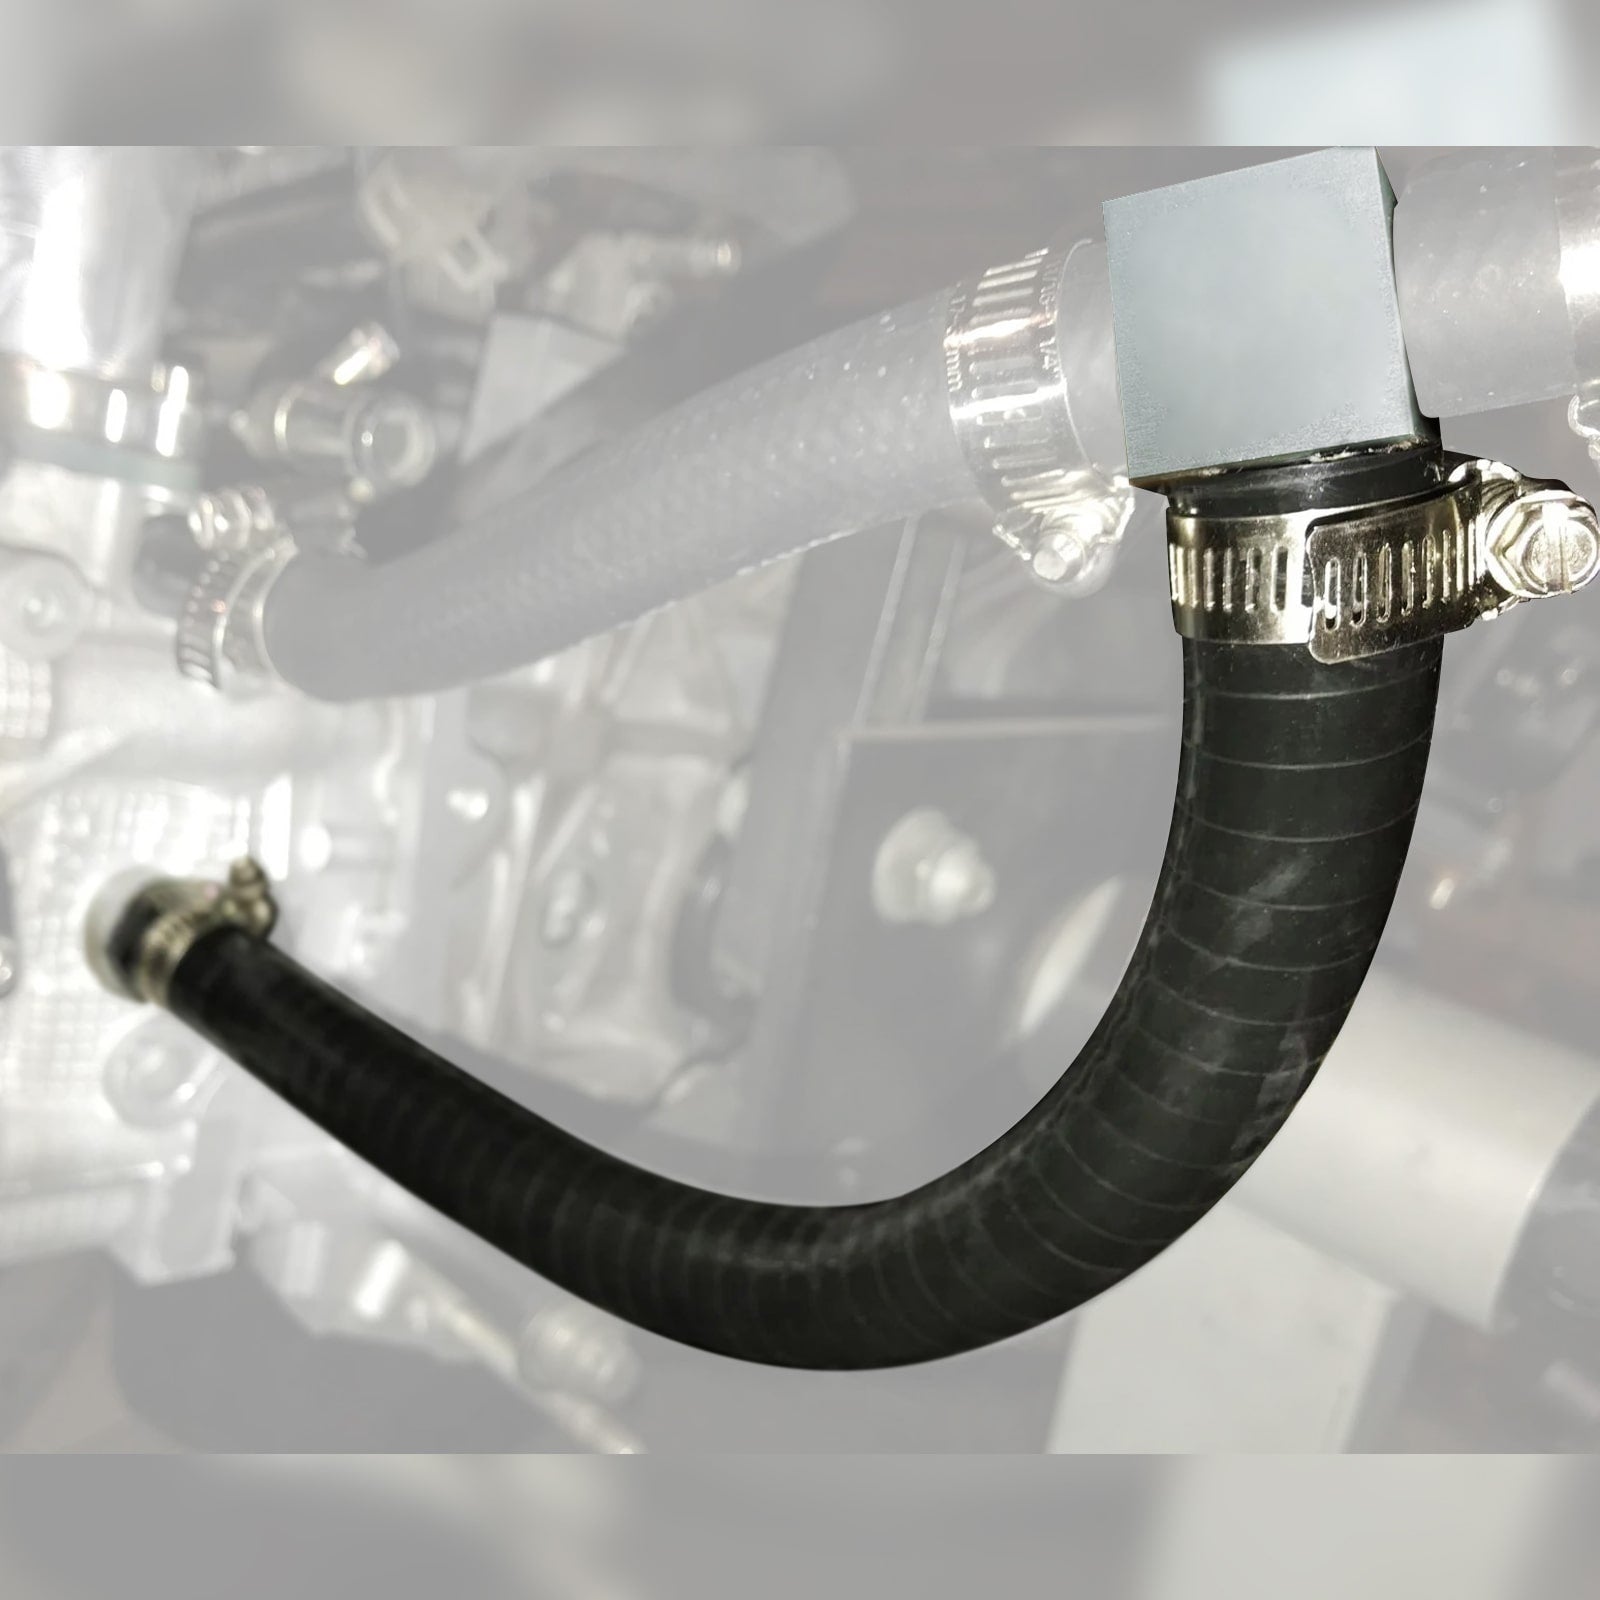 BEVINSEE Cylinder 4 Coolant Mod Cooling Mod Kit For Subaru EJ20 EJ25 Engines